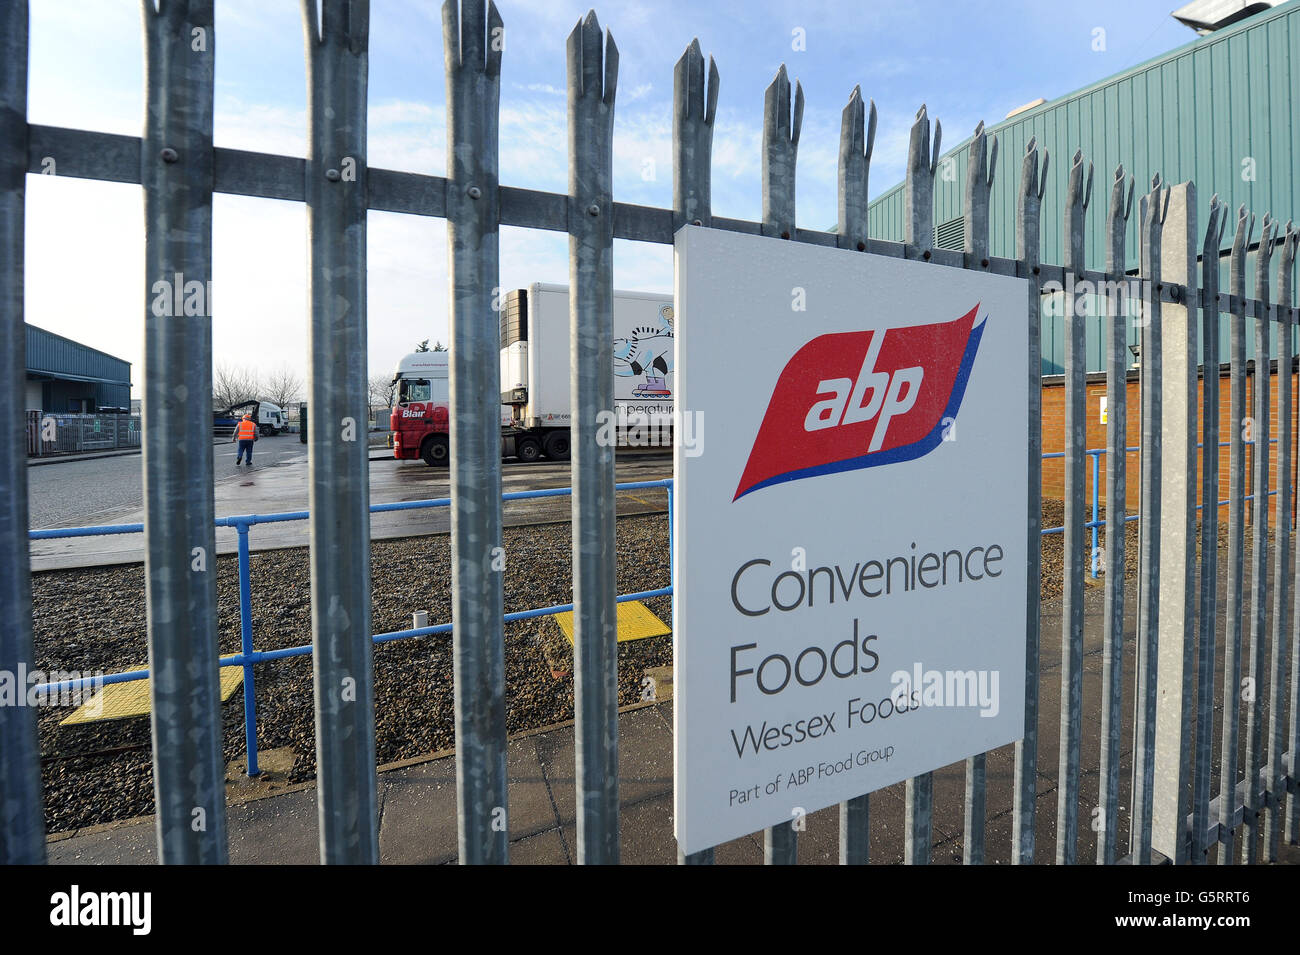 L'usine ABP Foods de Leeming Bar, dans le North Yorkshire. Les fournisseurs d'Europe continentale sont soupçonnés d'être la source de viande de cheval trouvée dans les produits du boeuf, a affirmé une entreprise de transformation. Banque D'Images